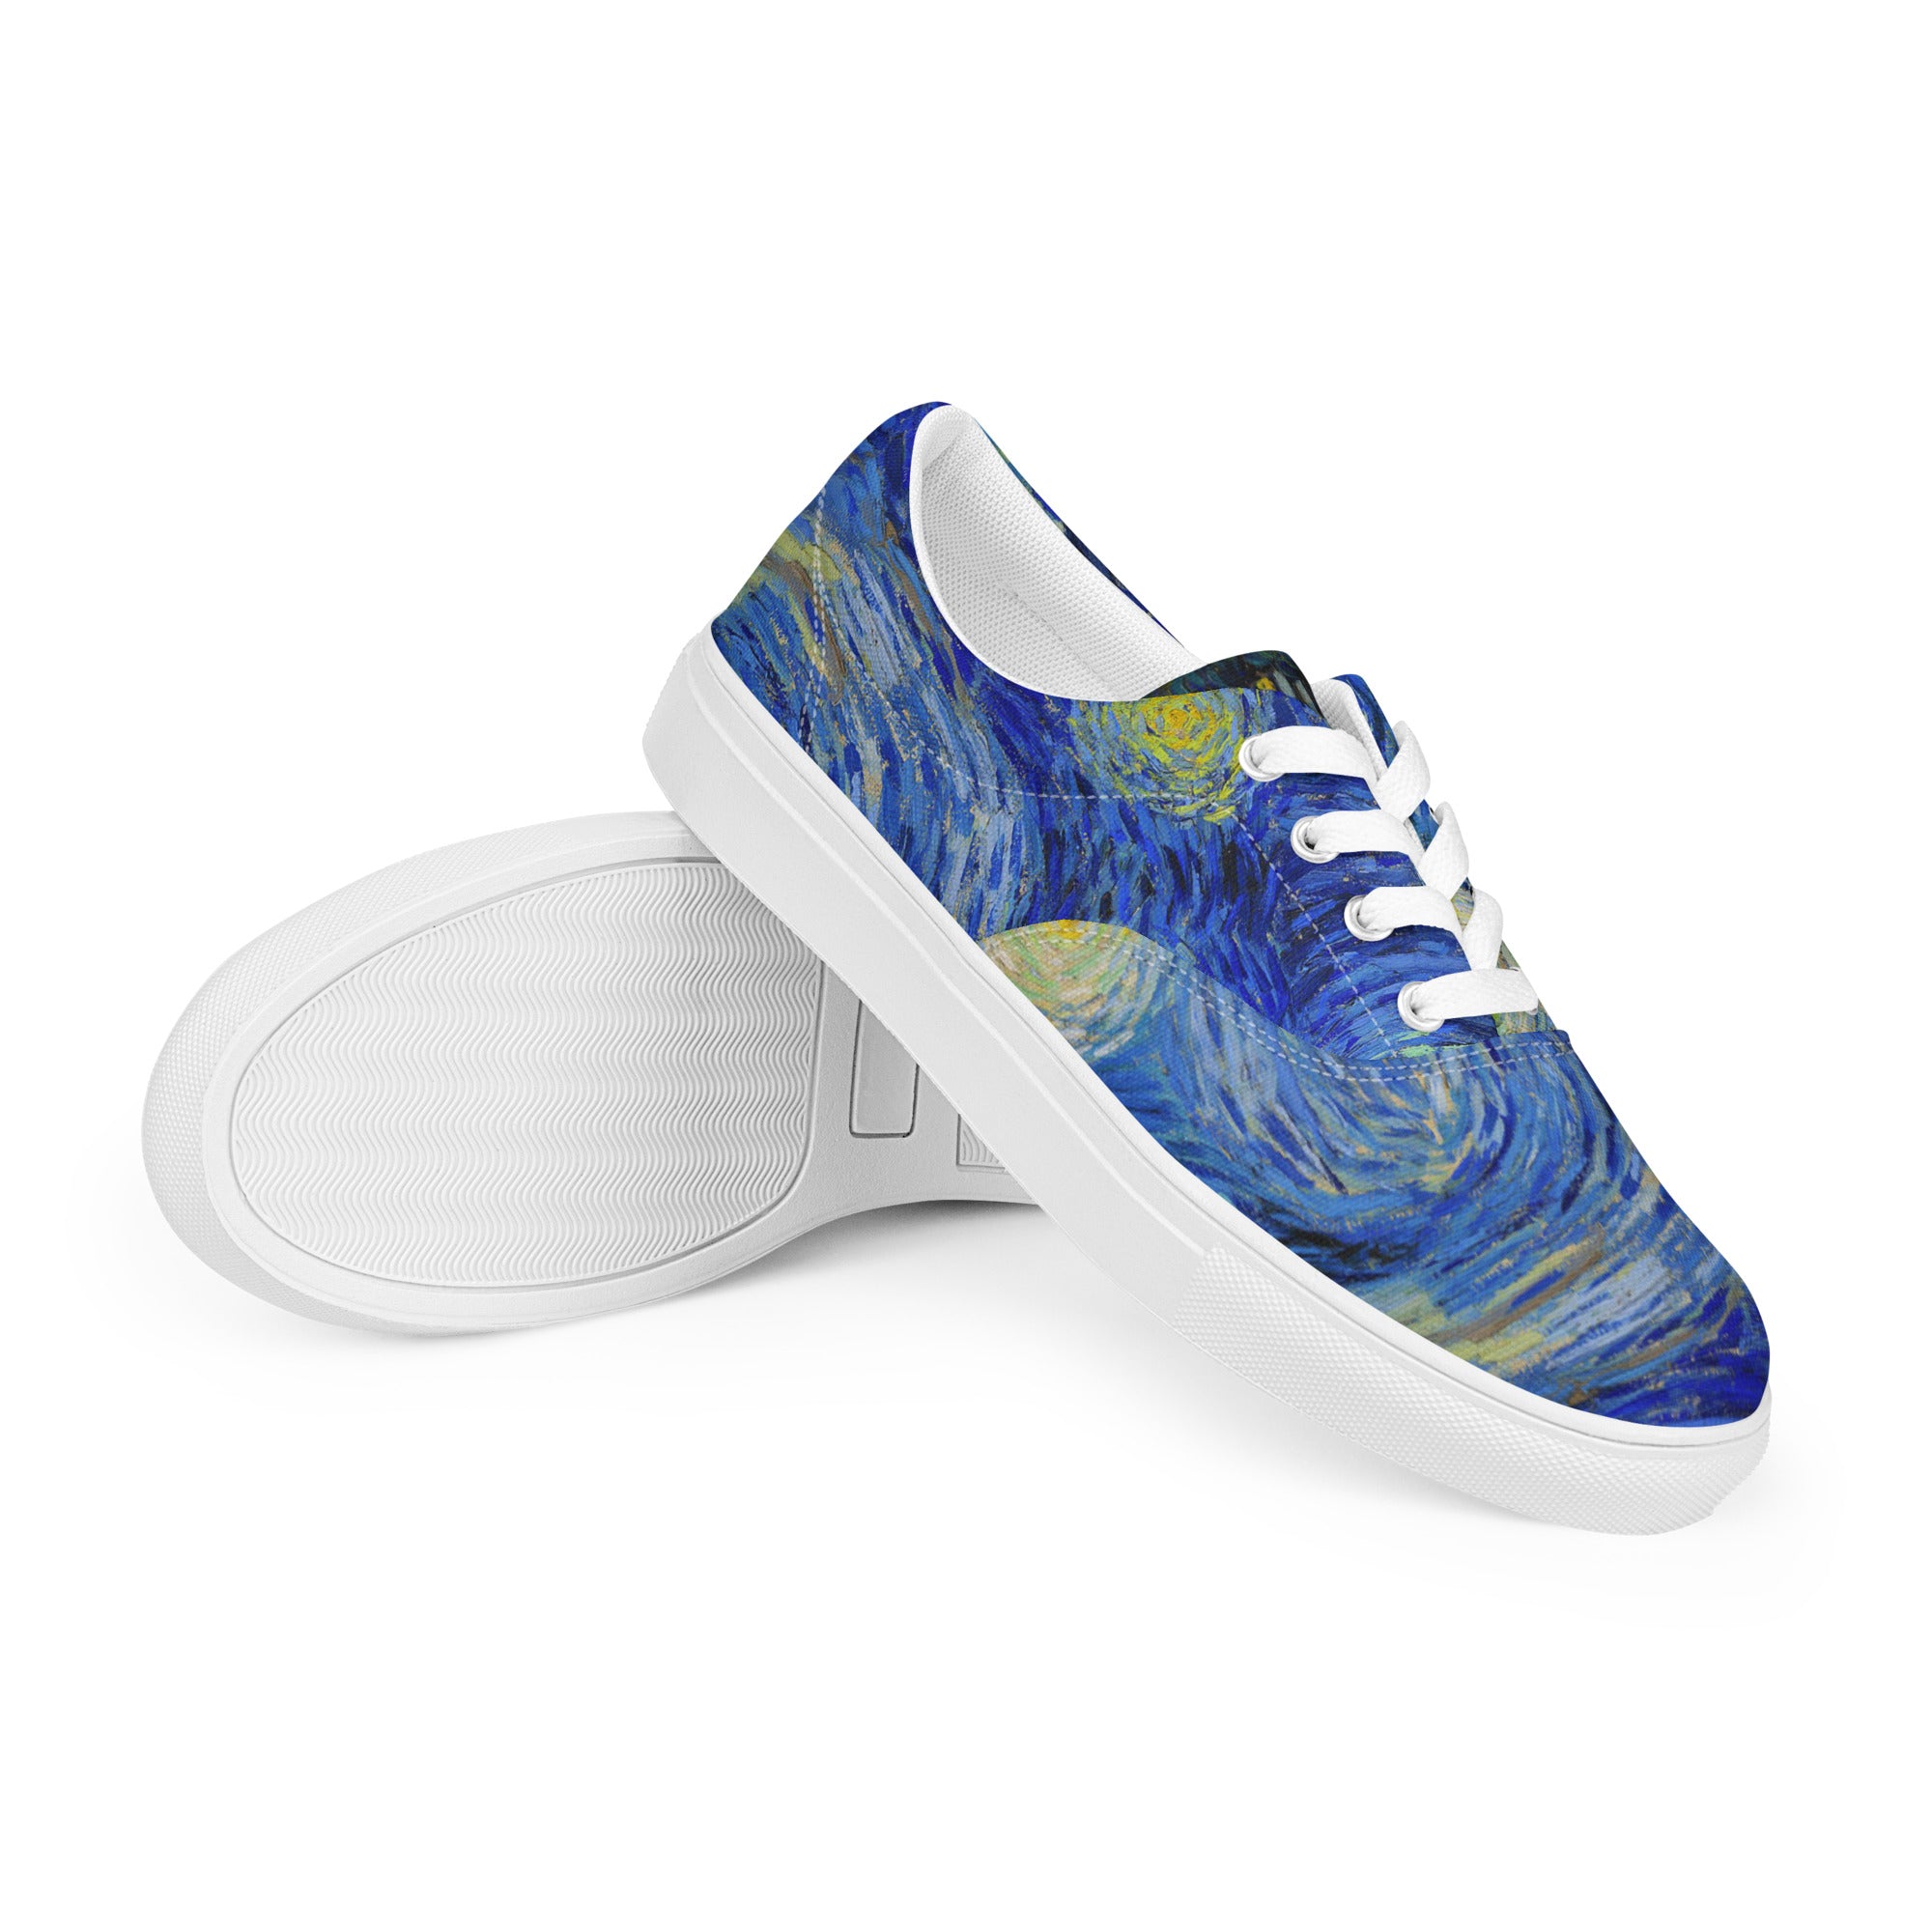 The Starry Night Van Gogh Sneakers – Galartsy